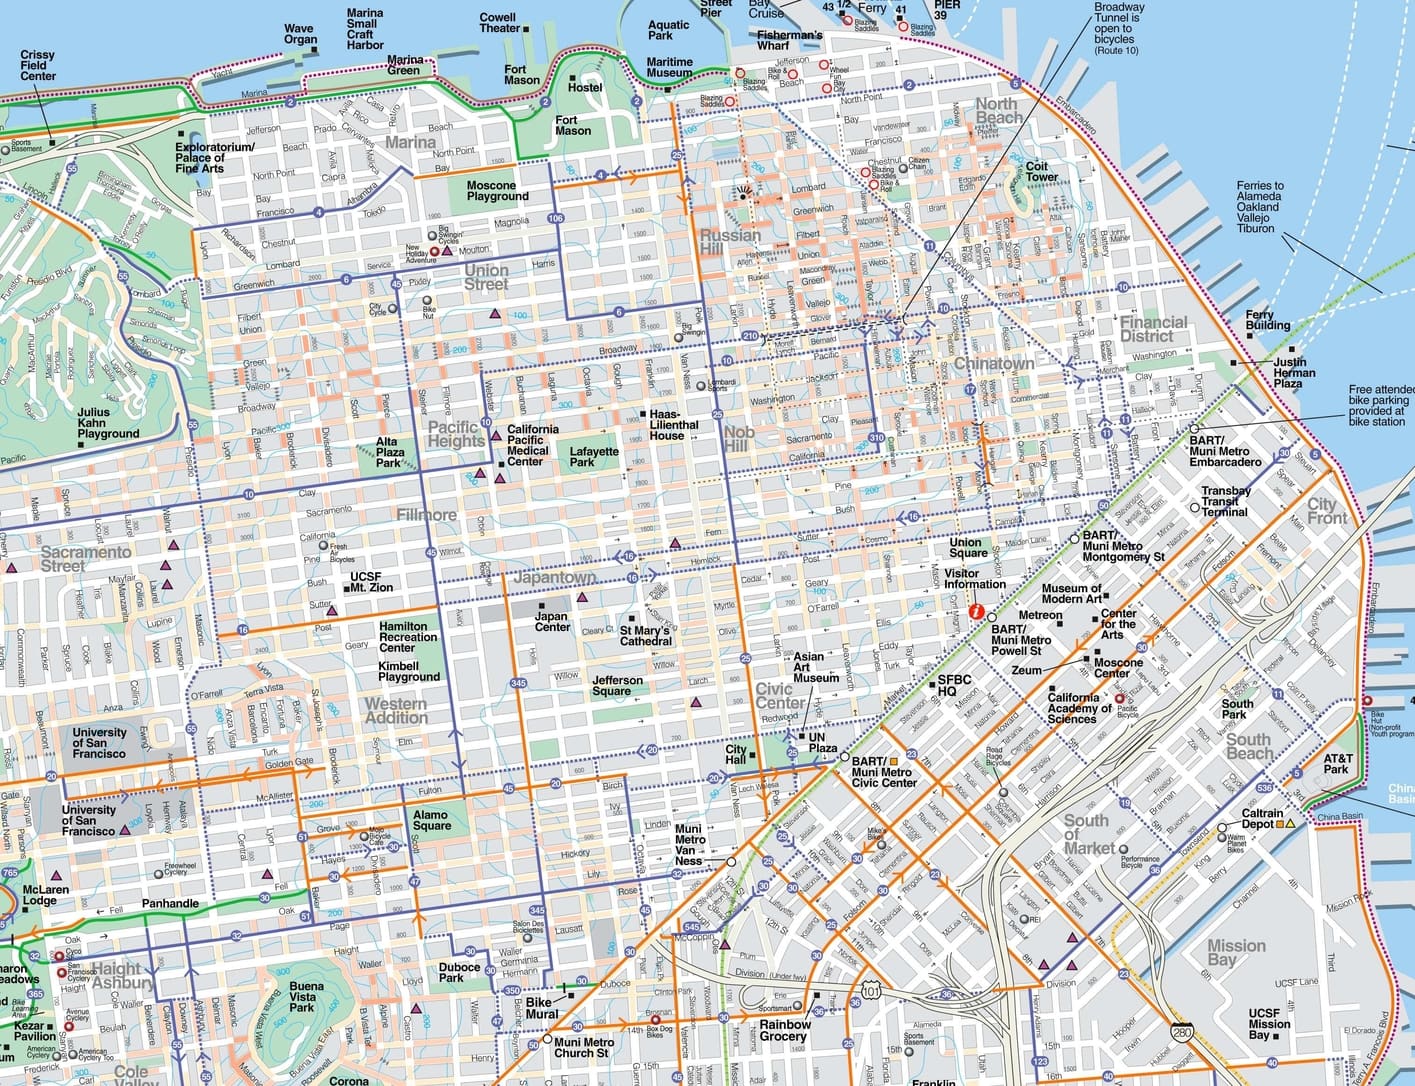 Mapa de San Francisco con máxima resolución